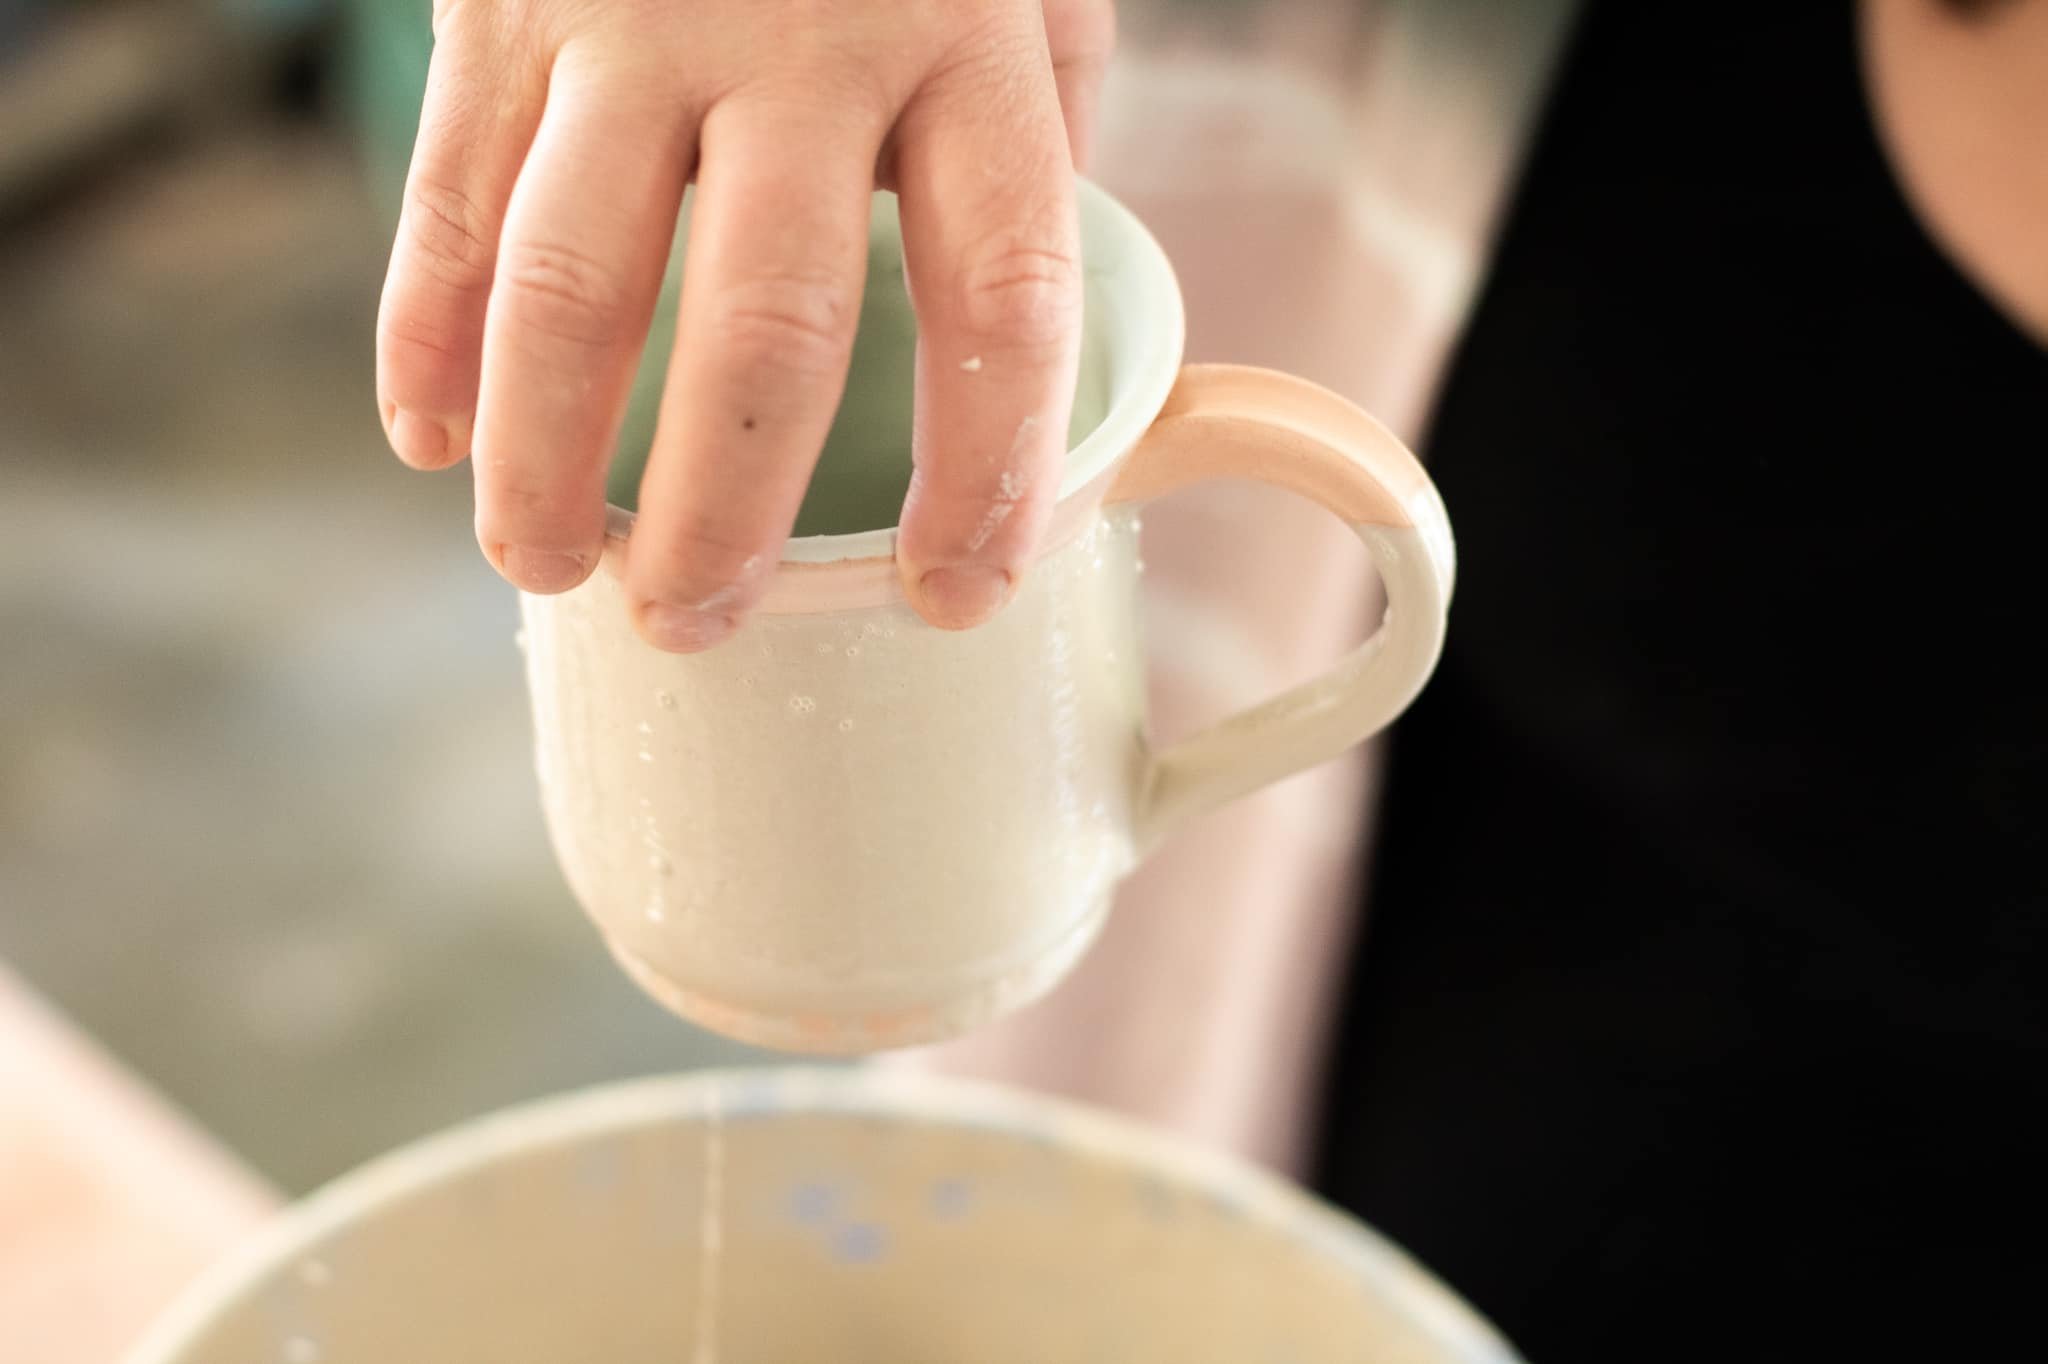 pottery process + mug glaze